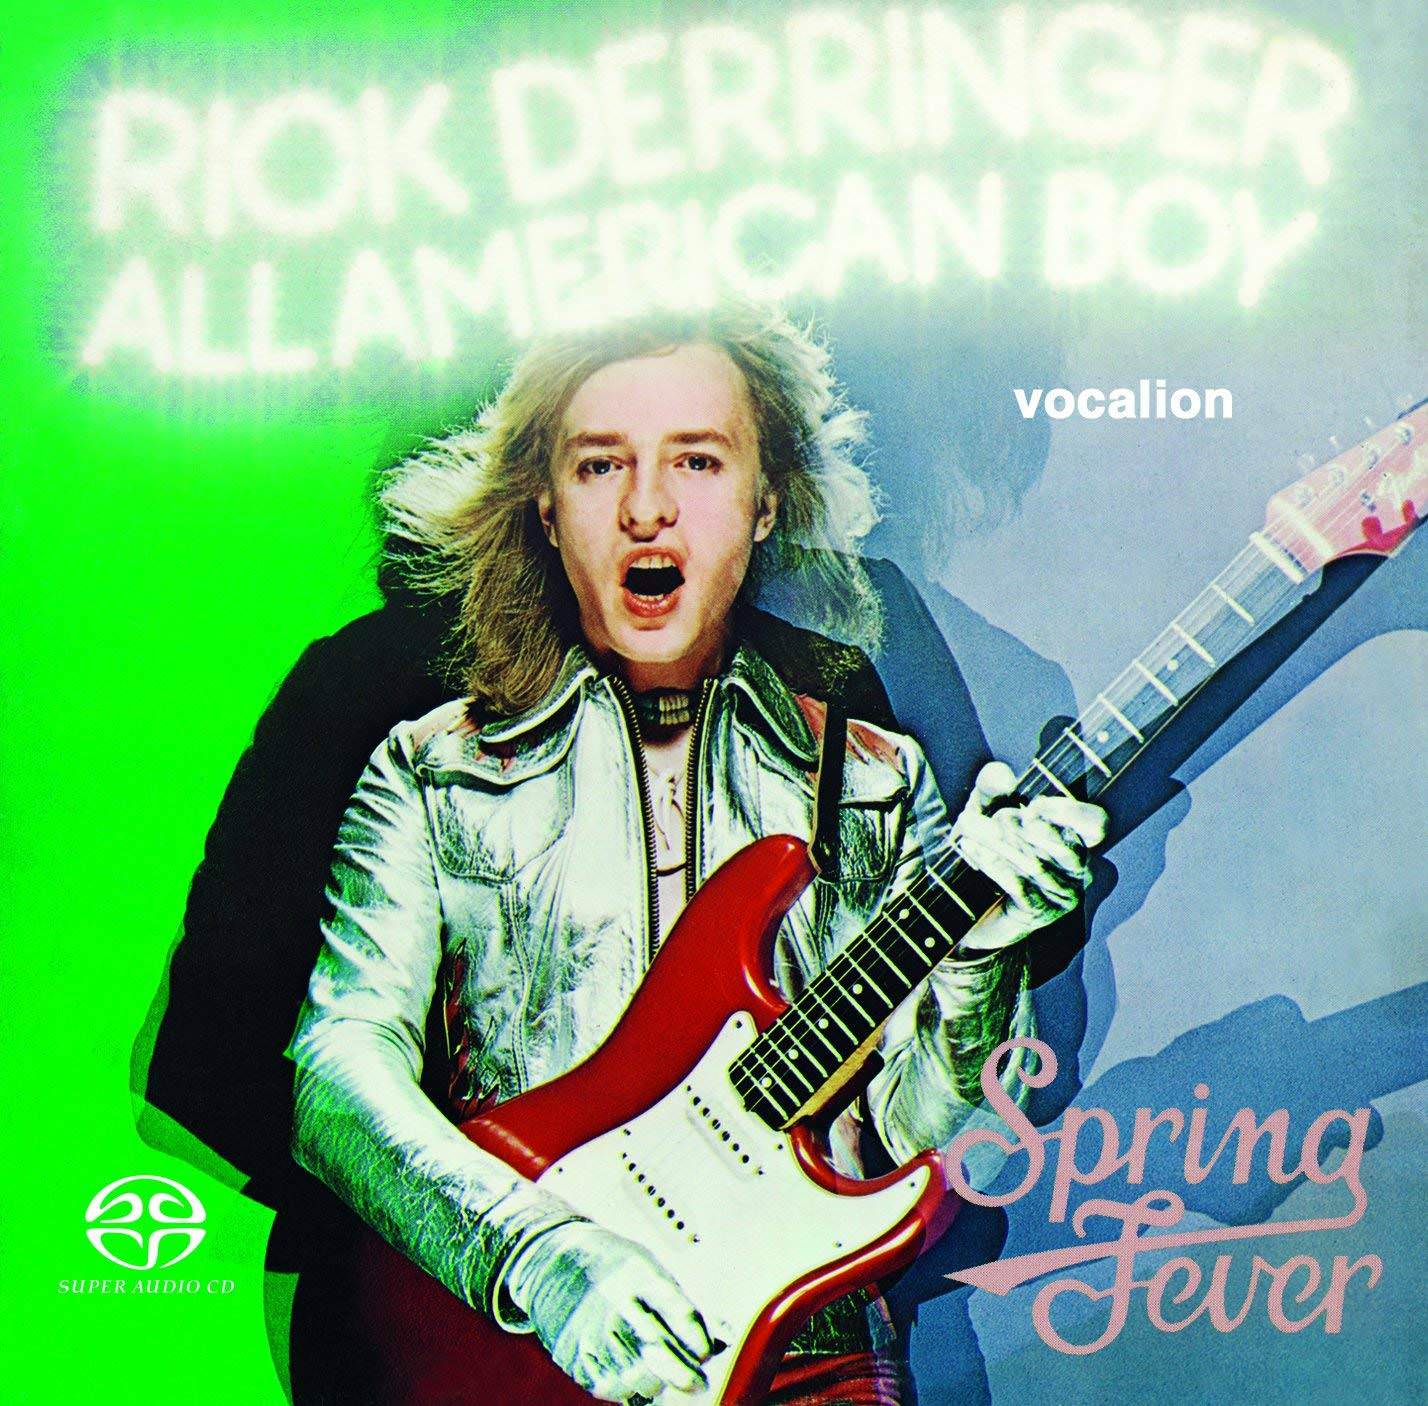 Rick Derringer - All American Boy & Spring Fever (1973/1975) [Reissue 2018] {SACD ISO + FLAC 24bit/88,2kHz}